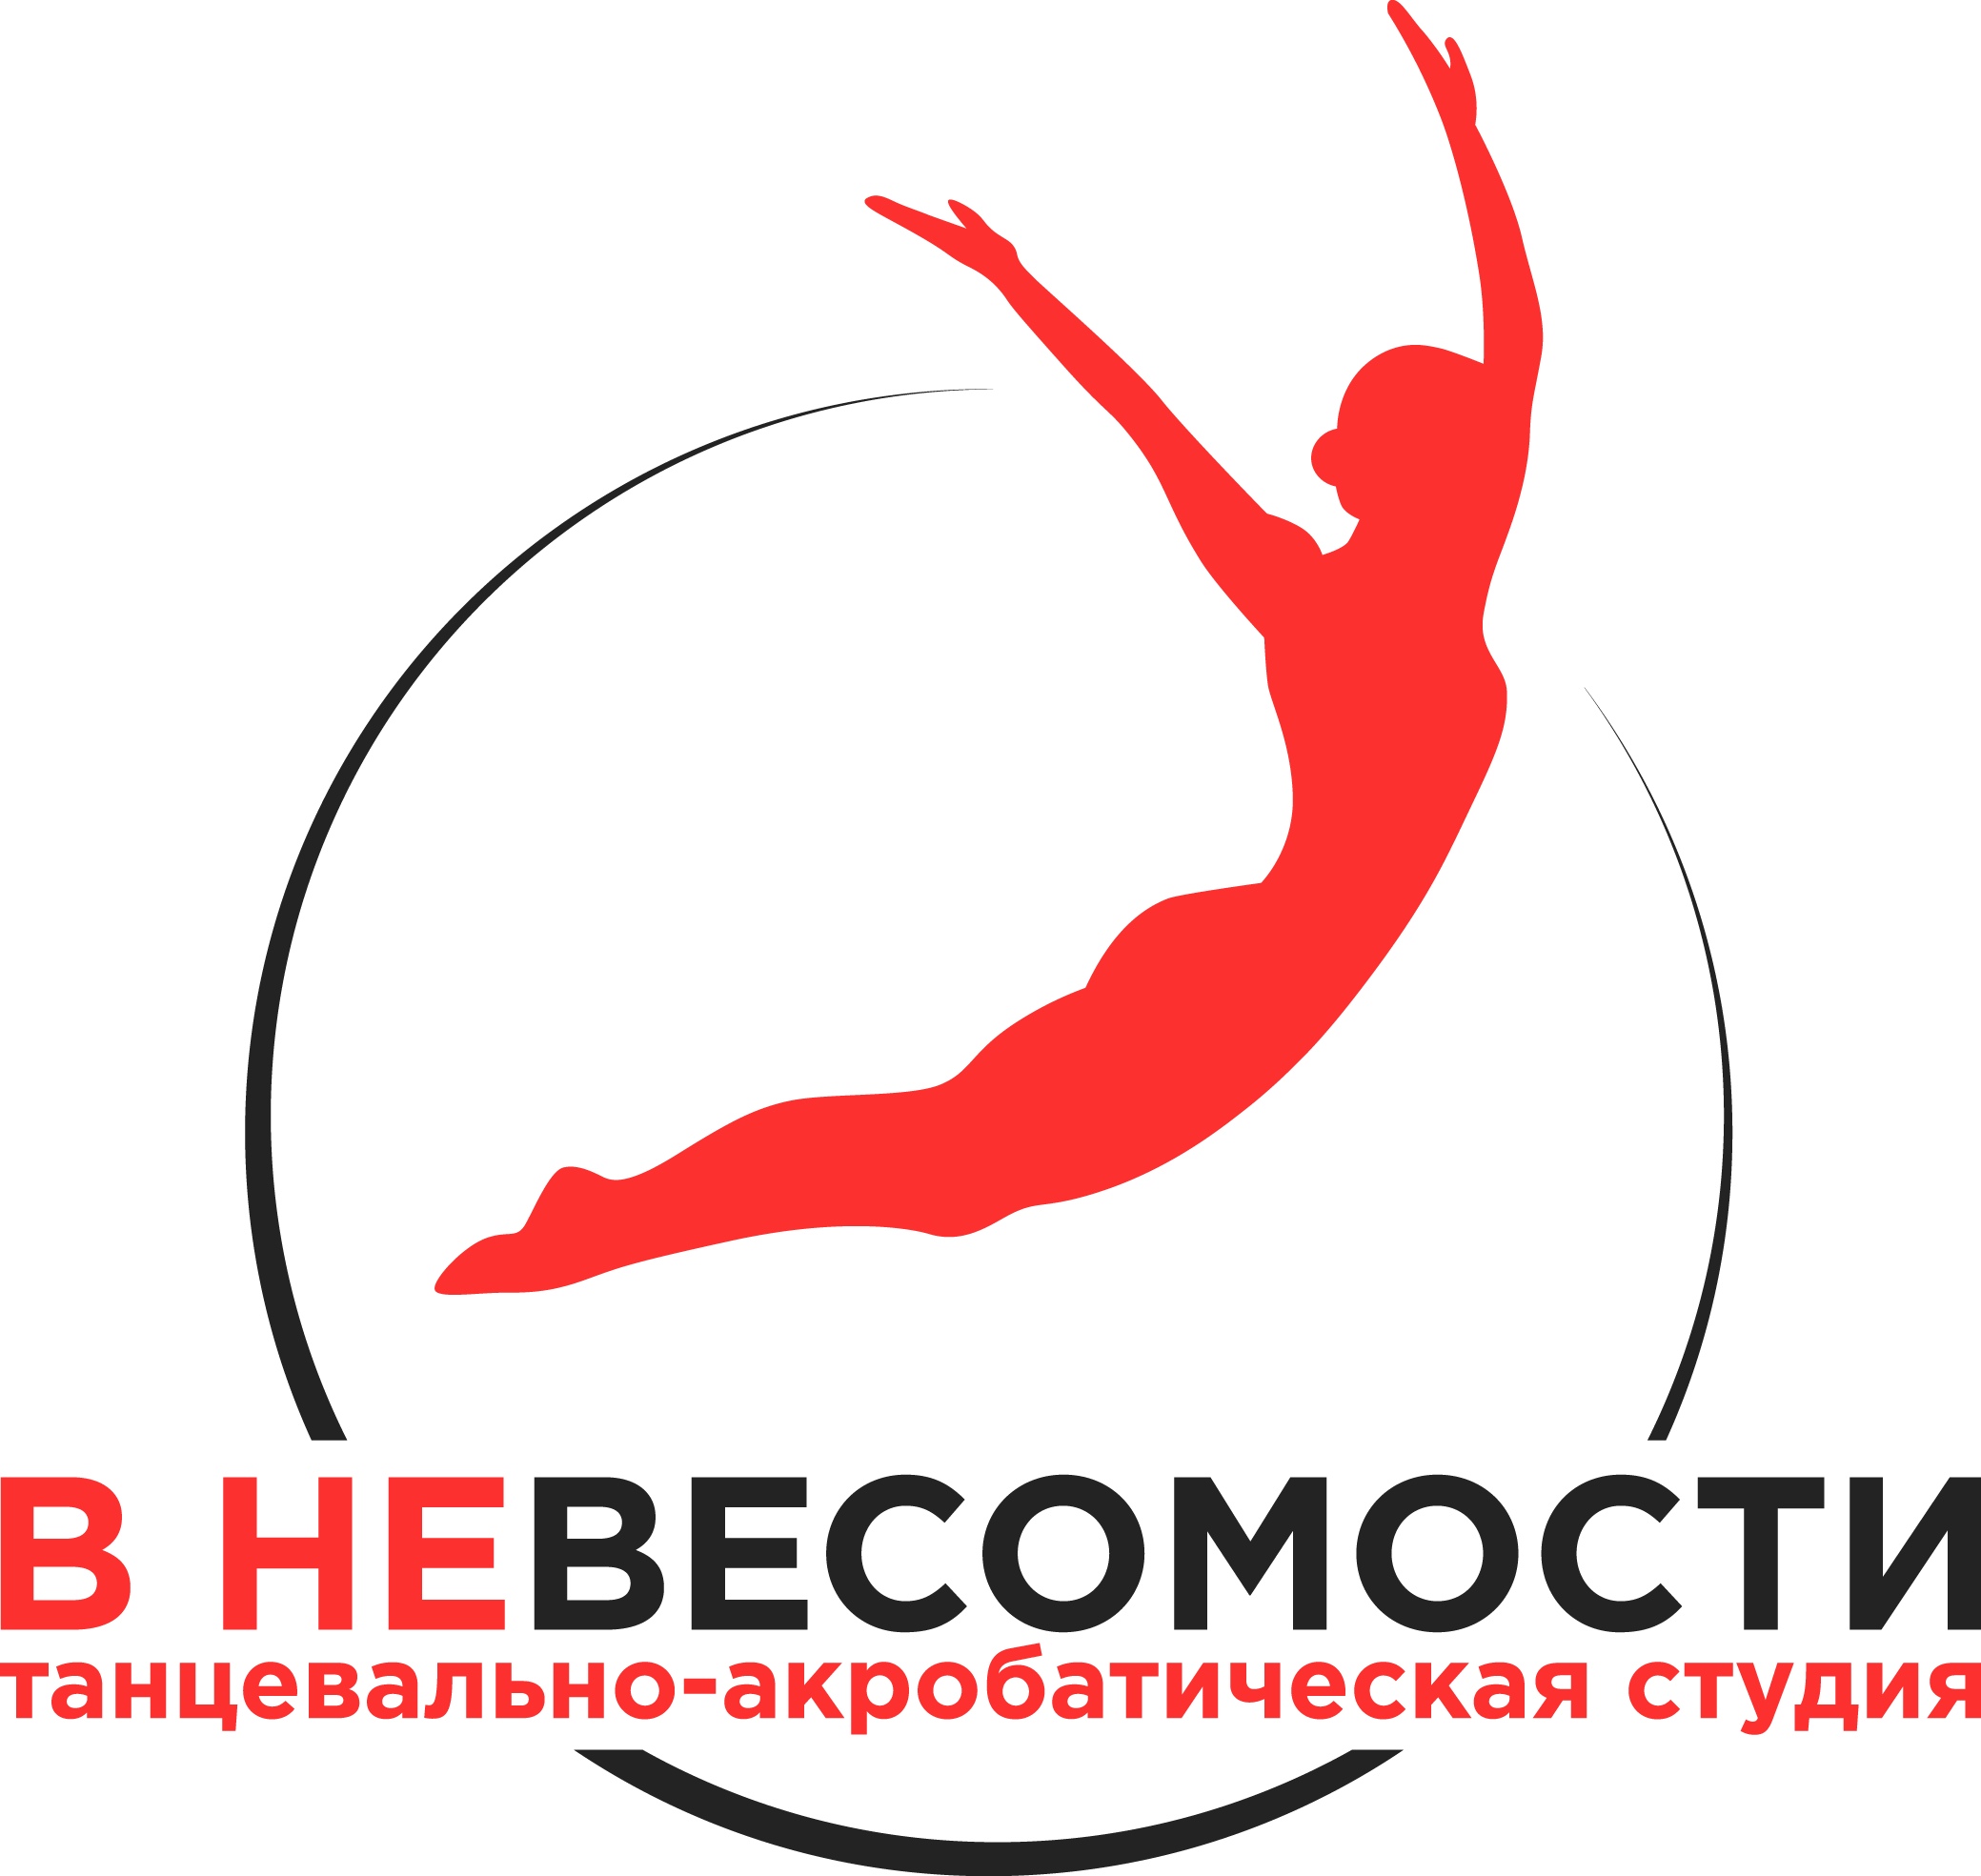 Логотип танцевально-акробатической студии В невесомости